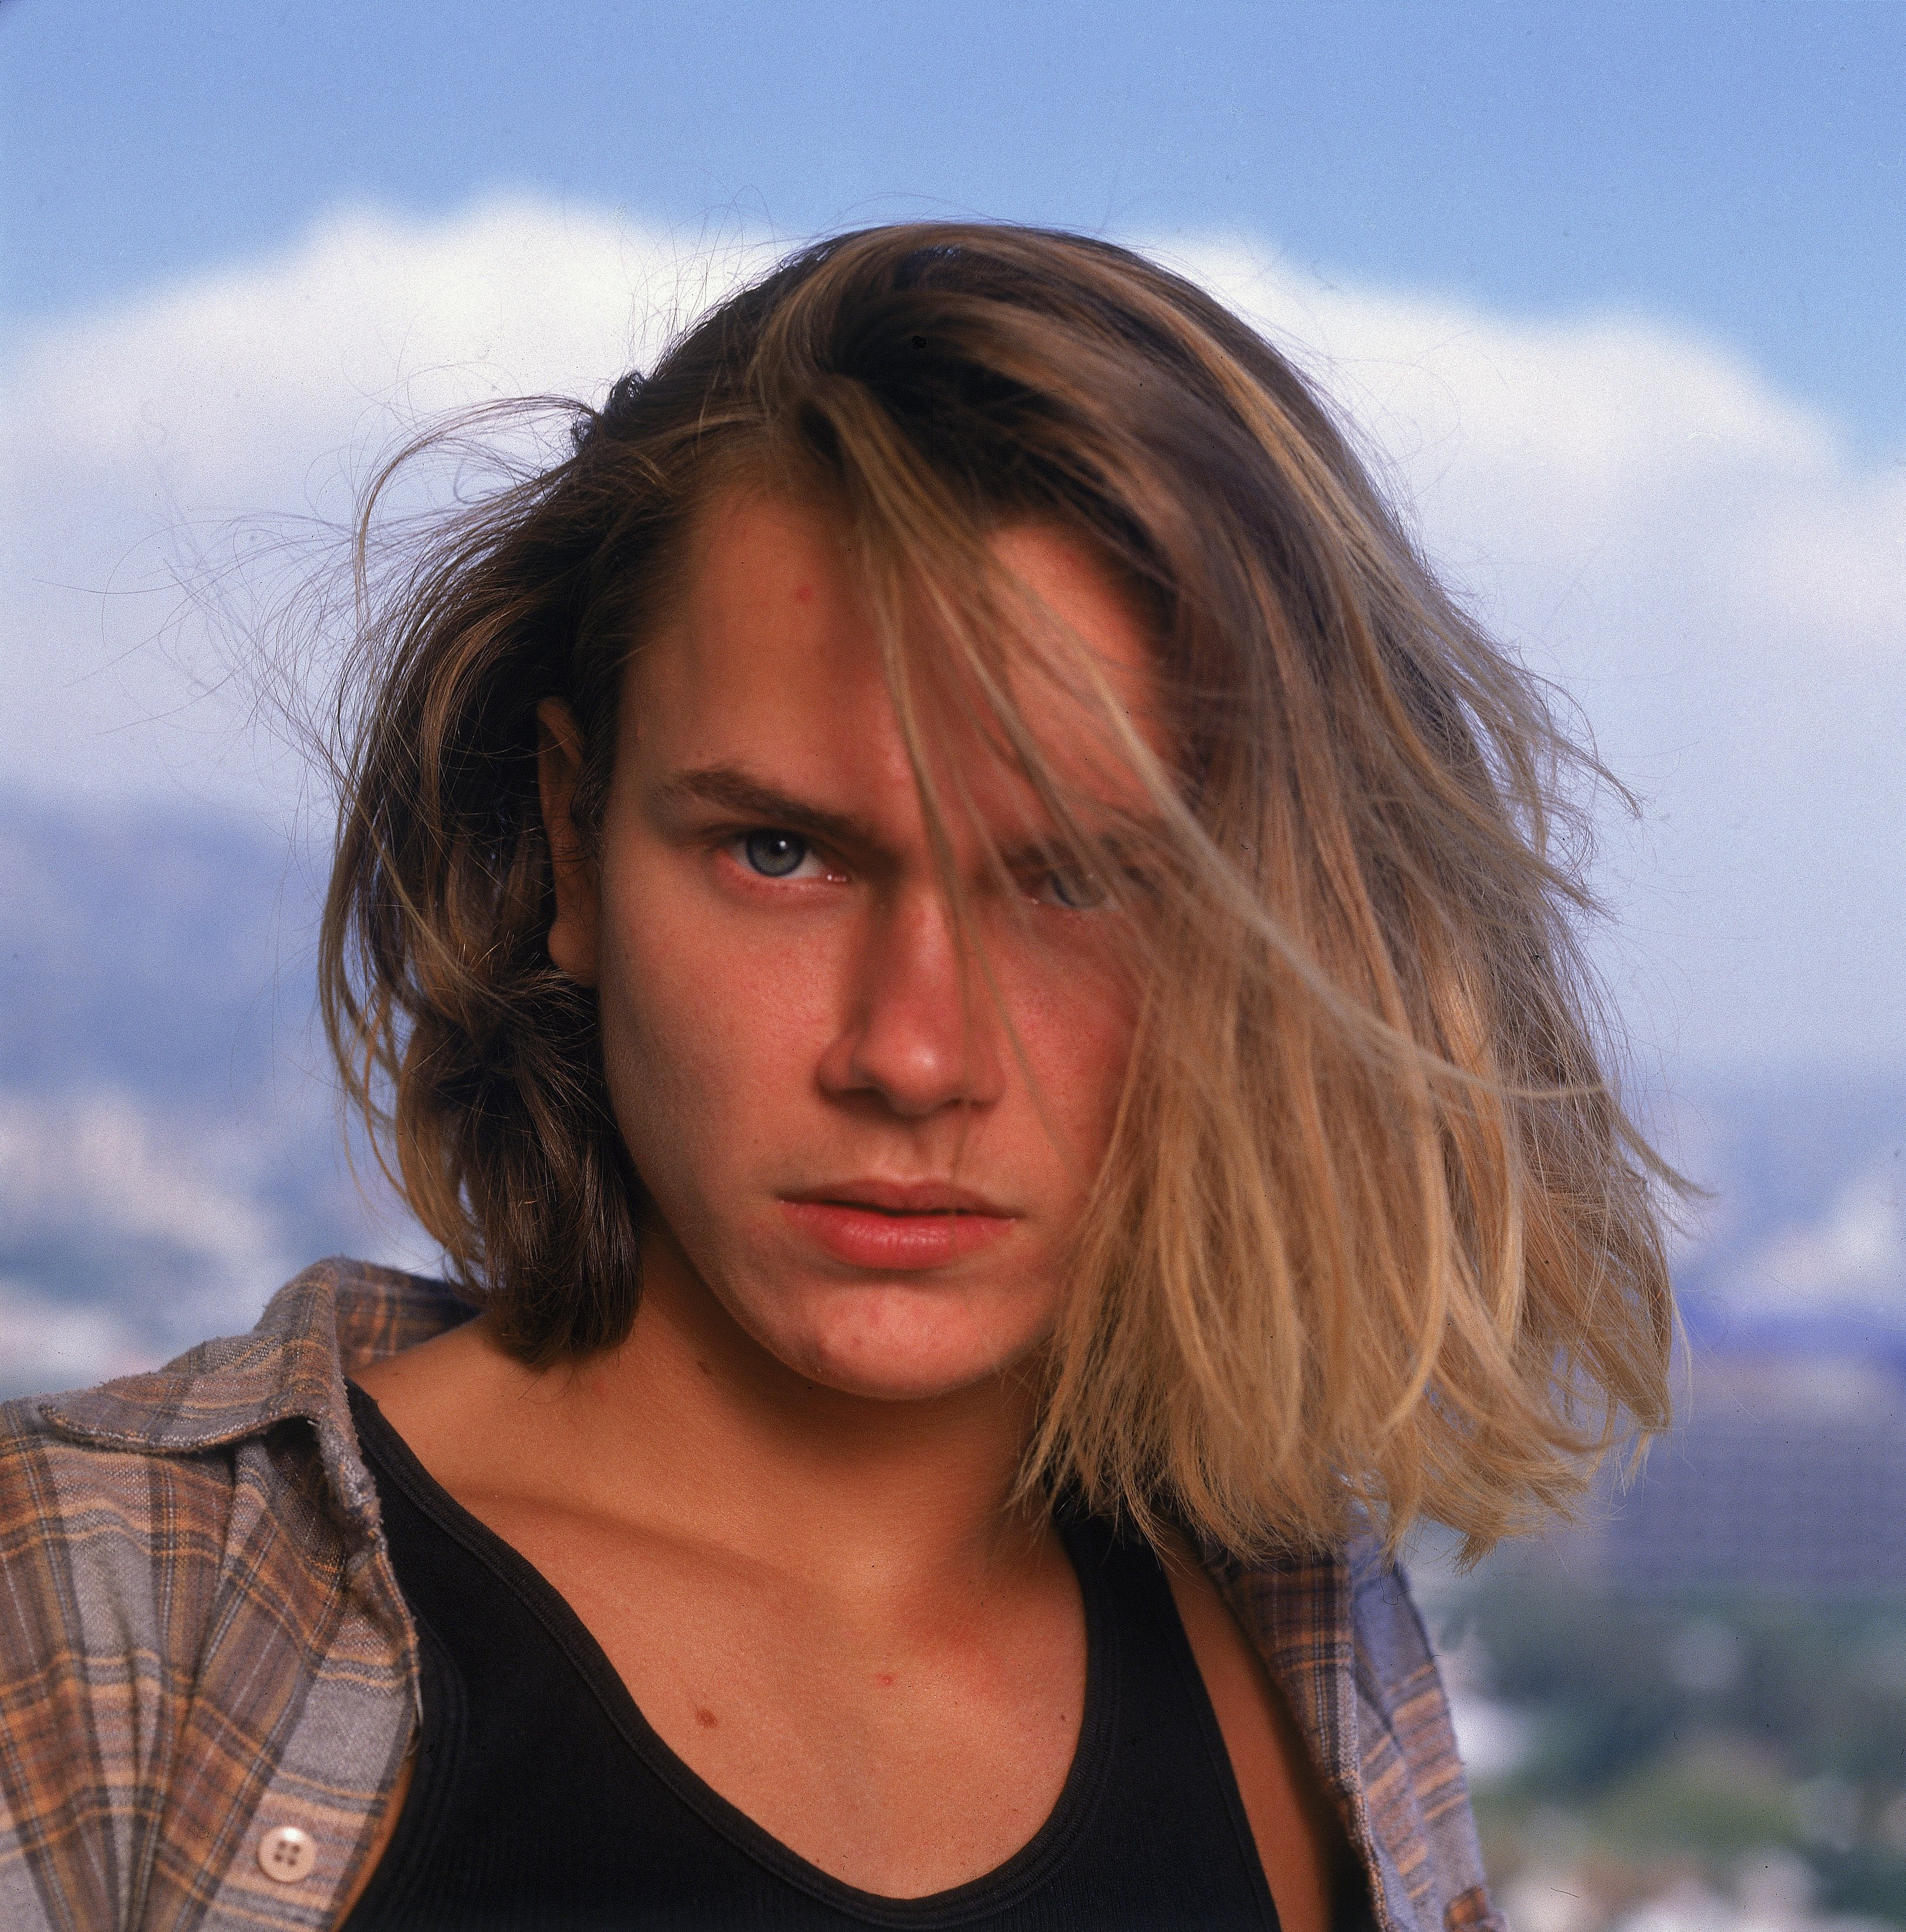 Outdoor Portrait Of Actor River Phoenix, 1991 | Photo: GettyImages